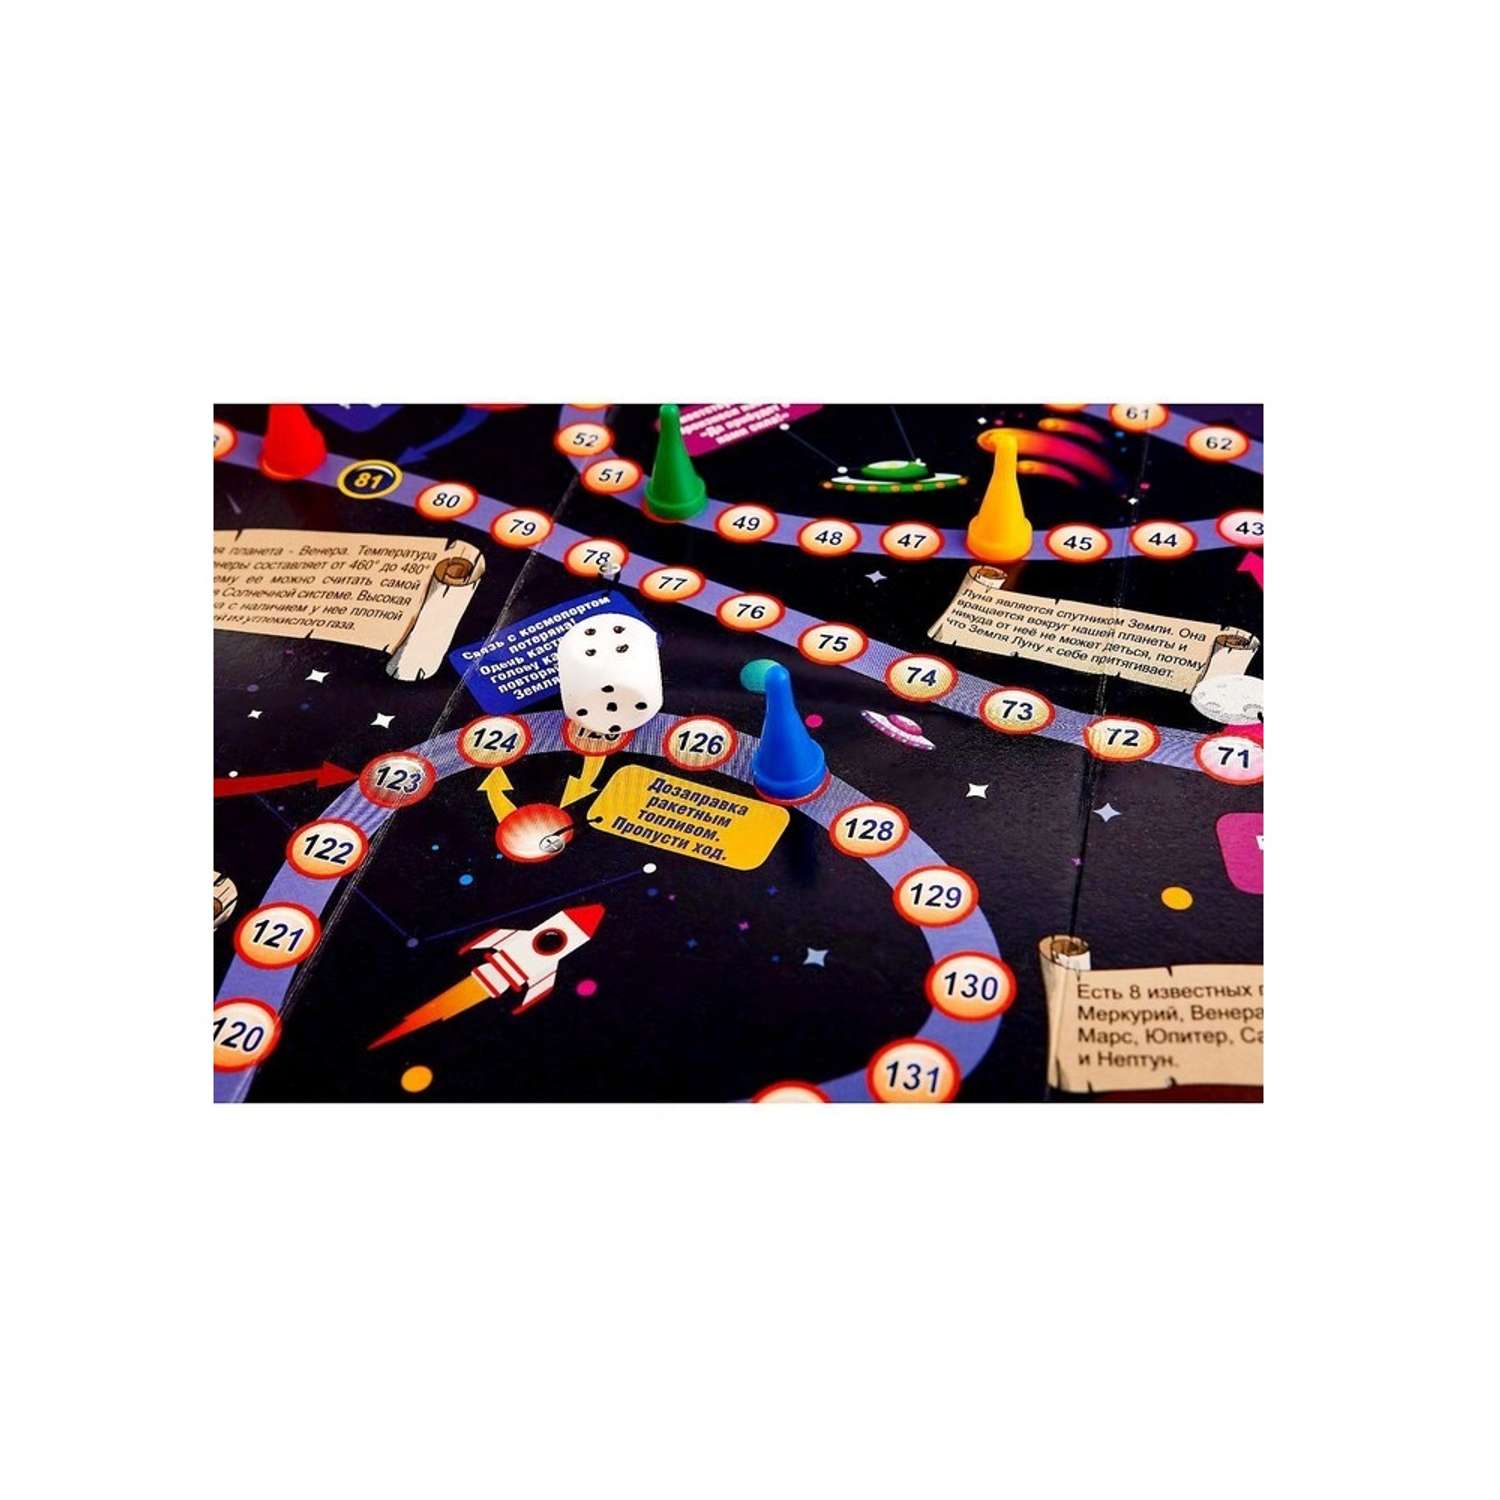 Игра-ходилка с карточками РАКЕТА Космическое приключение - фото 4